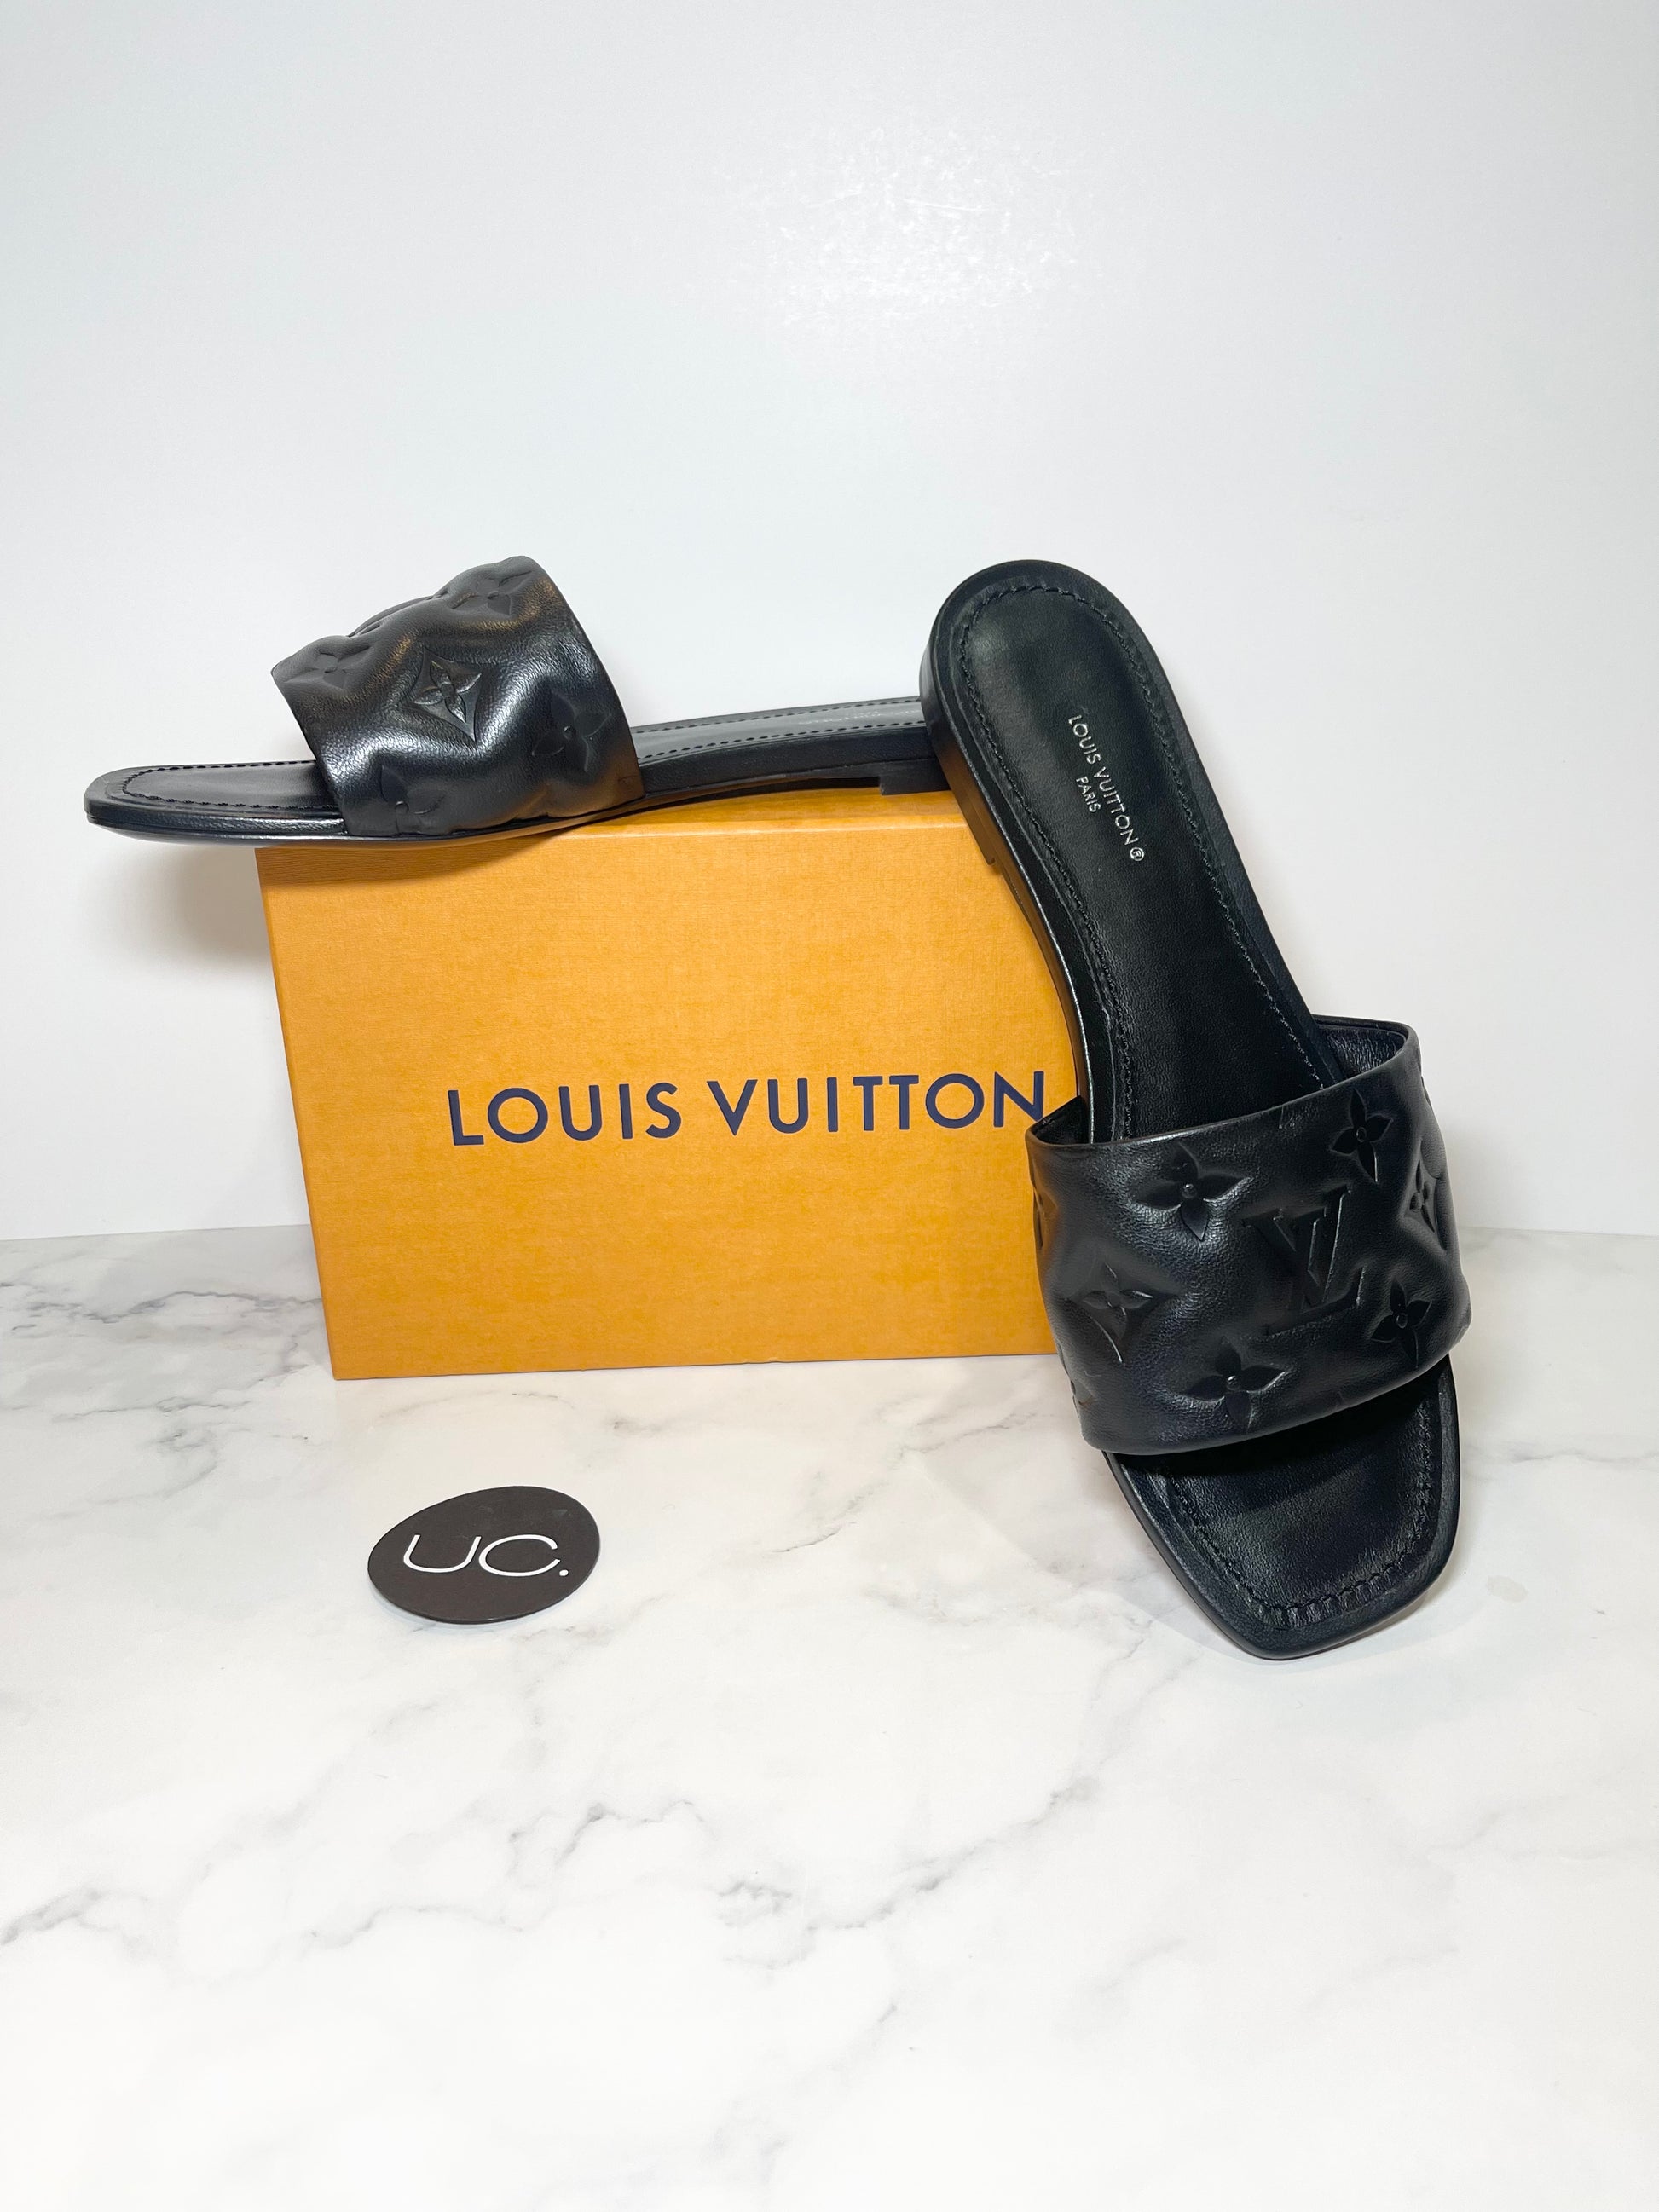 Louis Vuitton Revival Mule Light Blue. Size 38.0